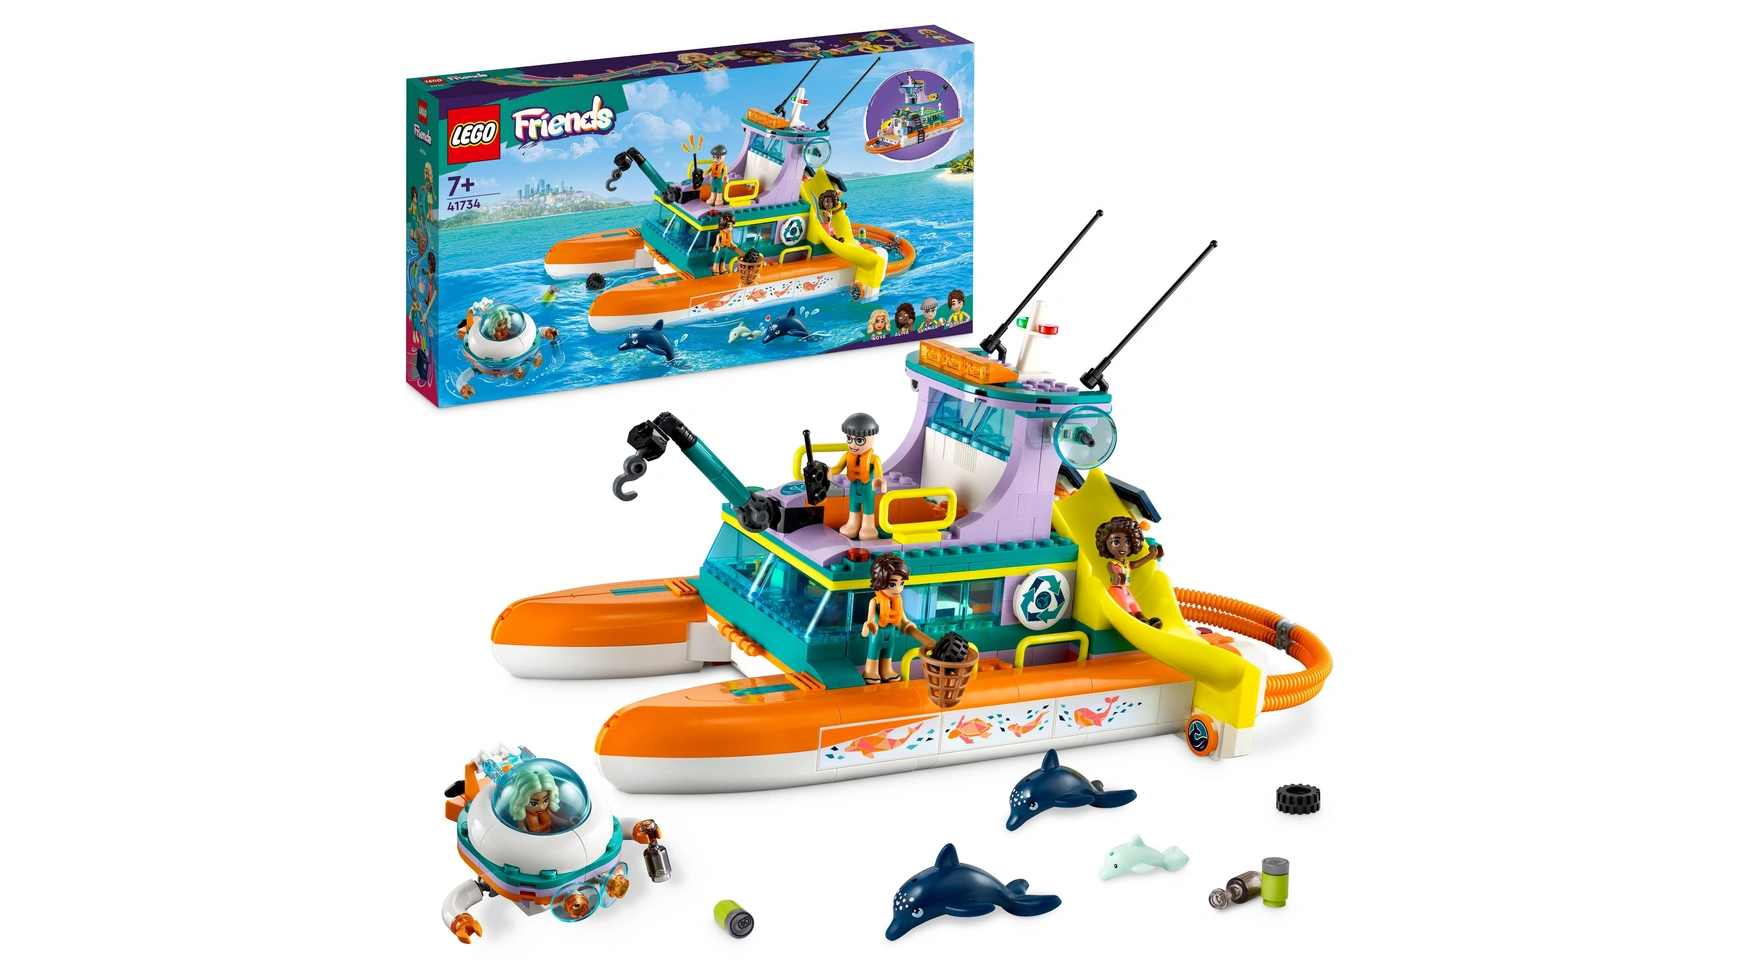 Lego Friends Набор Морской спасательный катер, игрушка с животными для детей lego creator набор обитатели морских глубин 3 в 1 для детей от 7 лет и старше